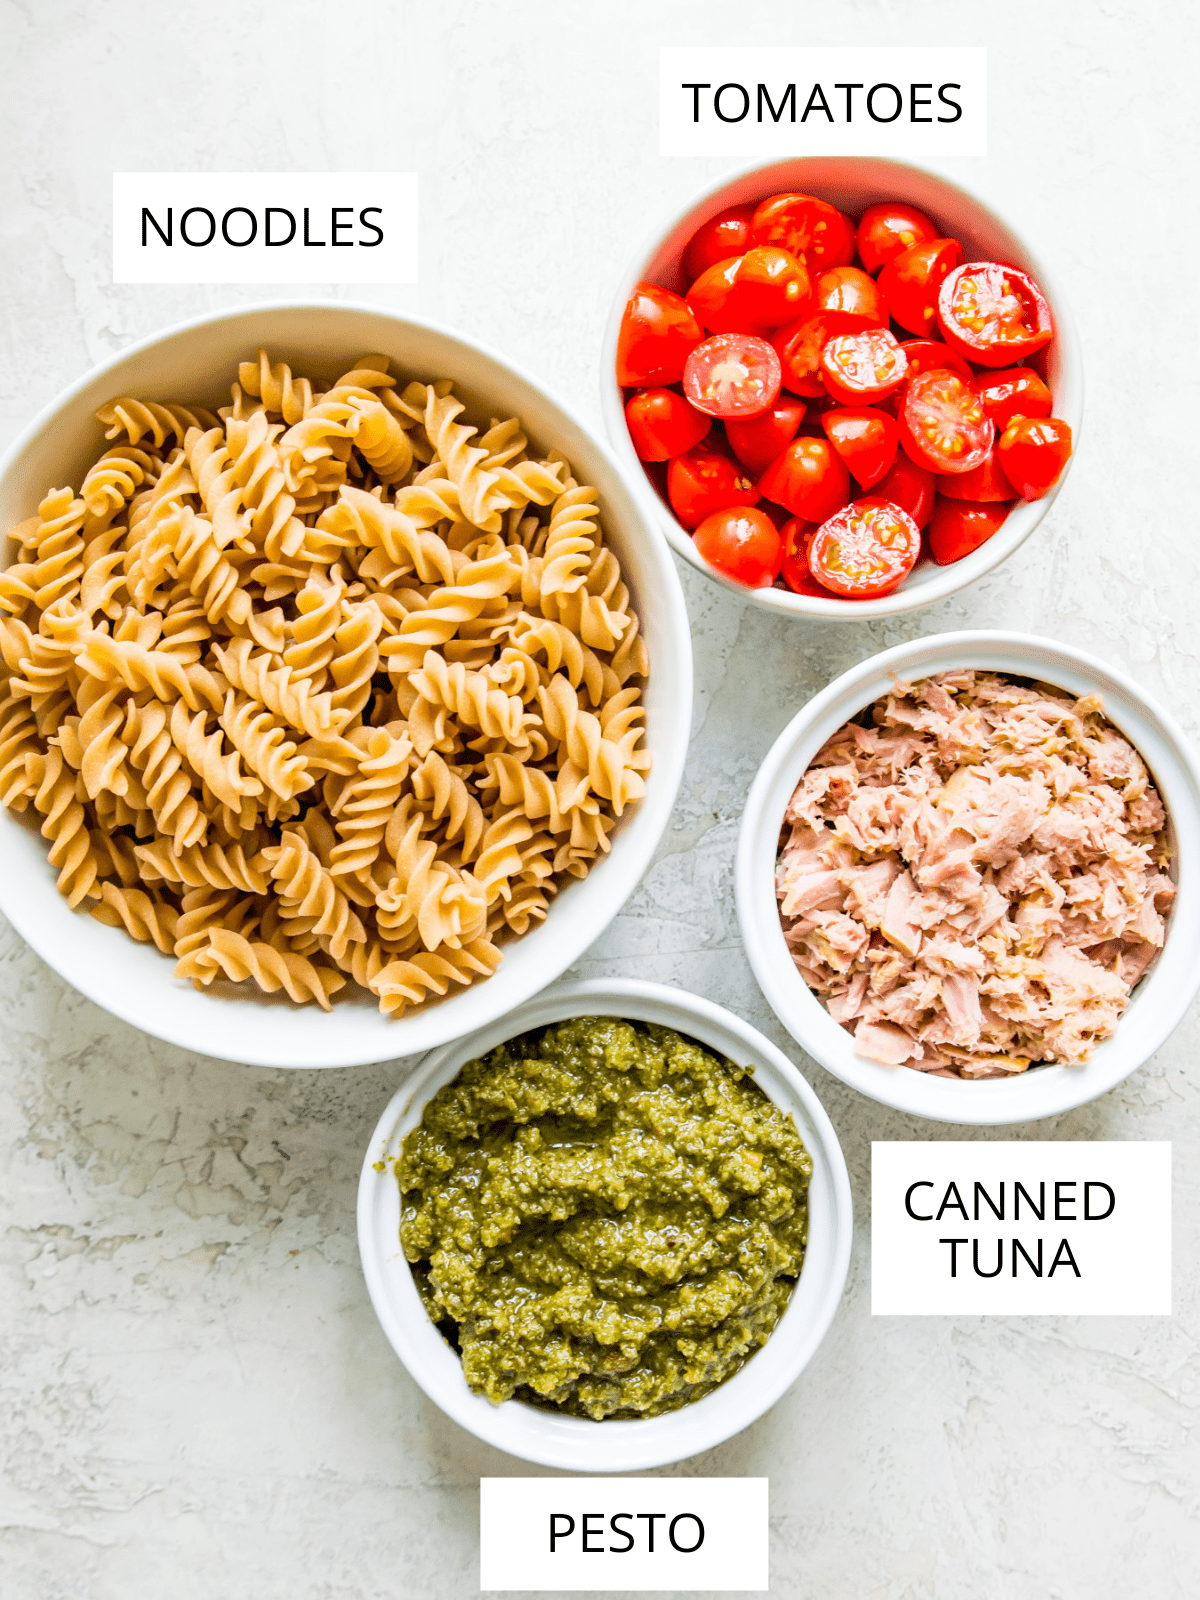 Ingredients for making tuna pasta pesto